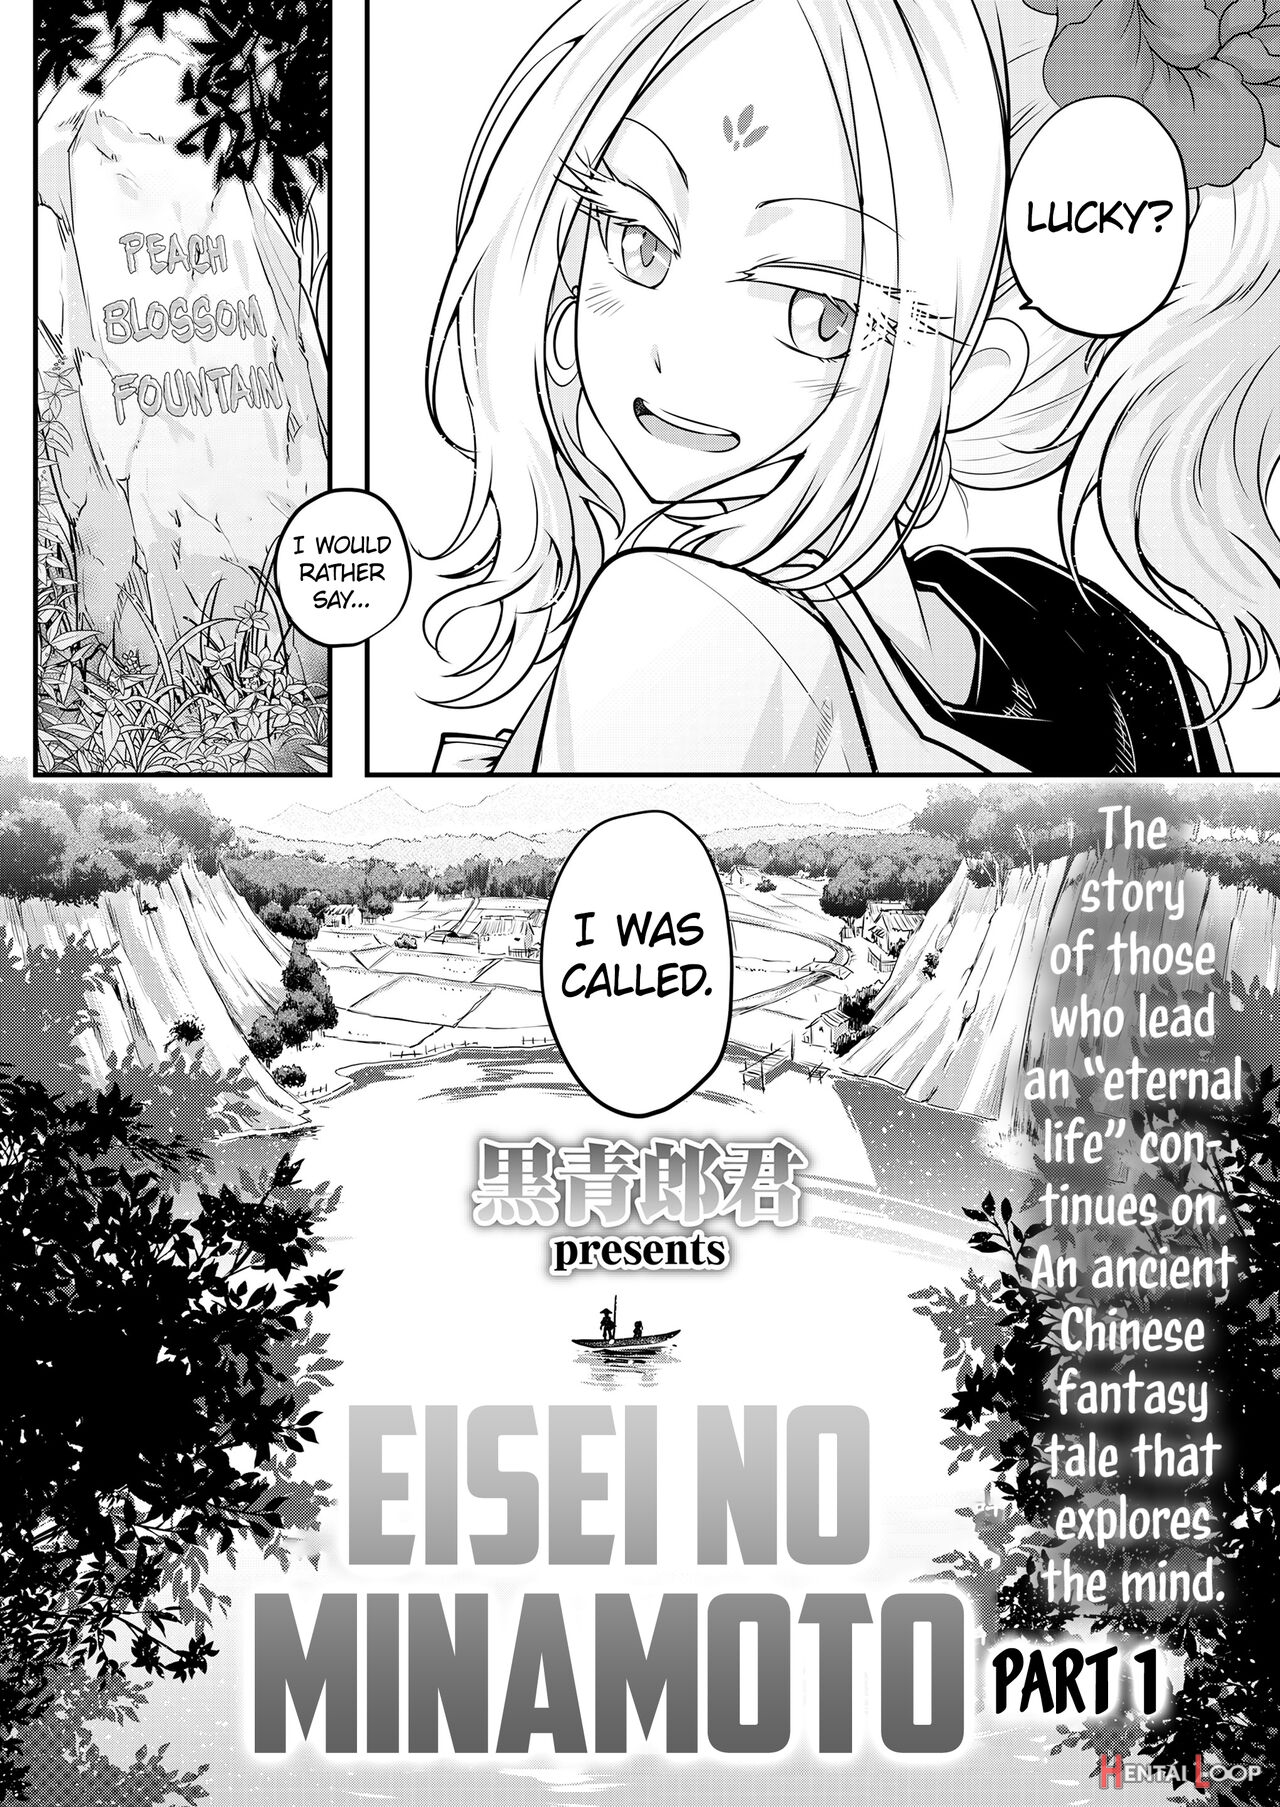 Eisei No Minamoto Part 1 page 2